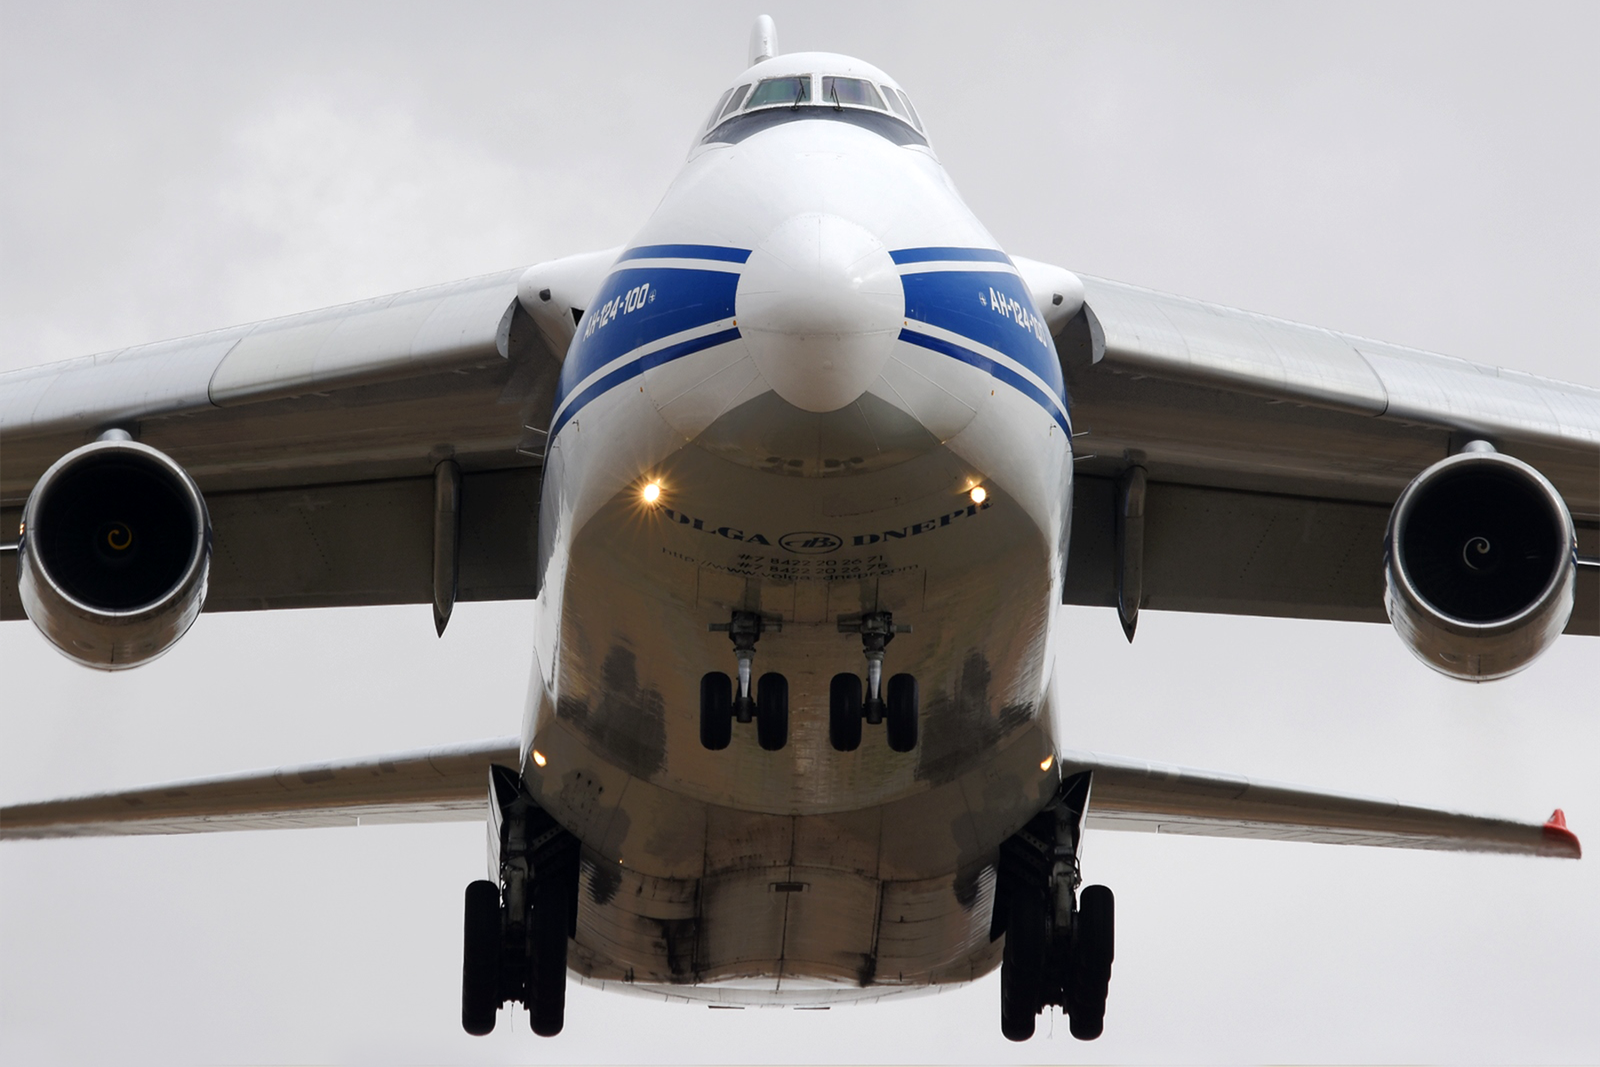 Volga-Dnepr ha llegado a tener 14 AN-124 en su flota, aunque parece que actualmente siguen en condiciones de vuelo menos de 5. Foto: Alberto González